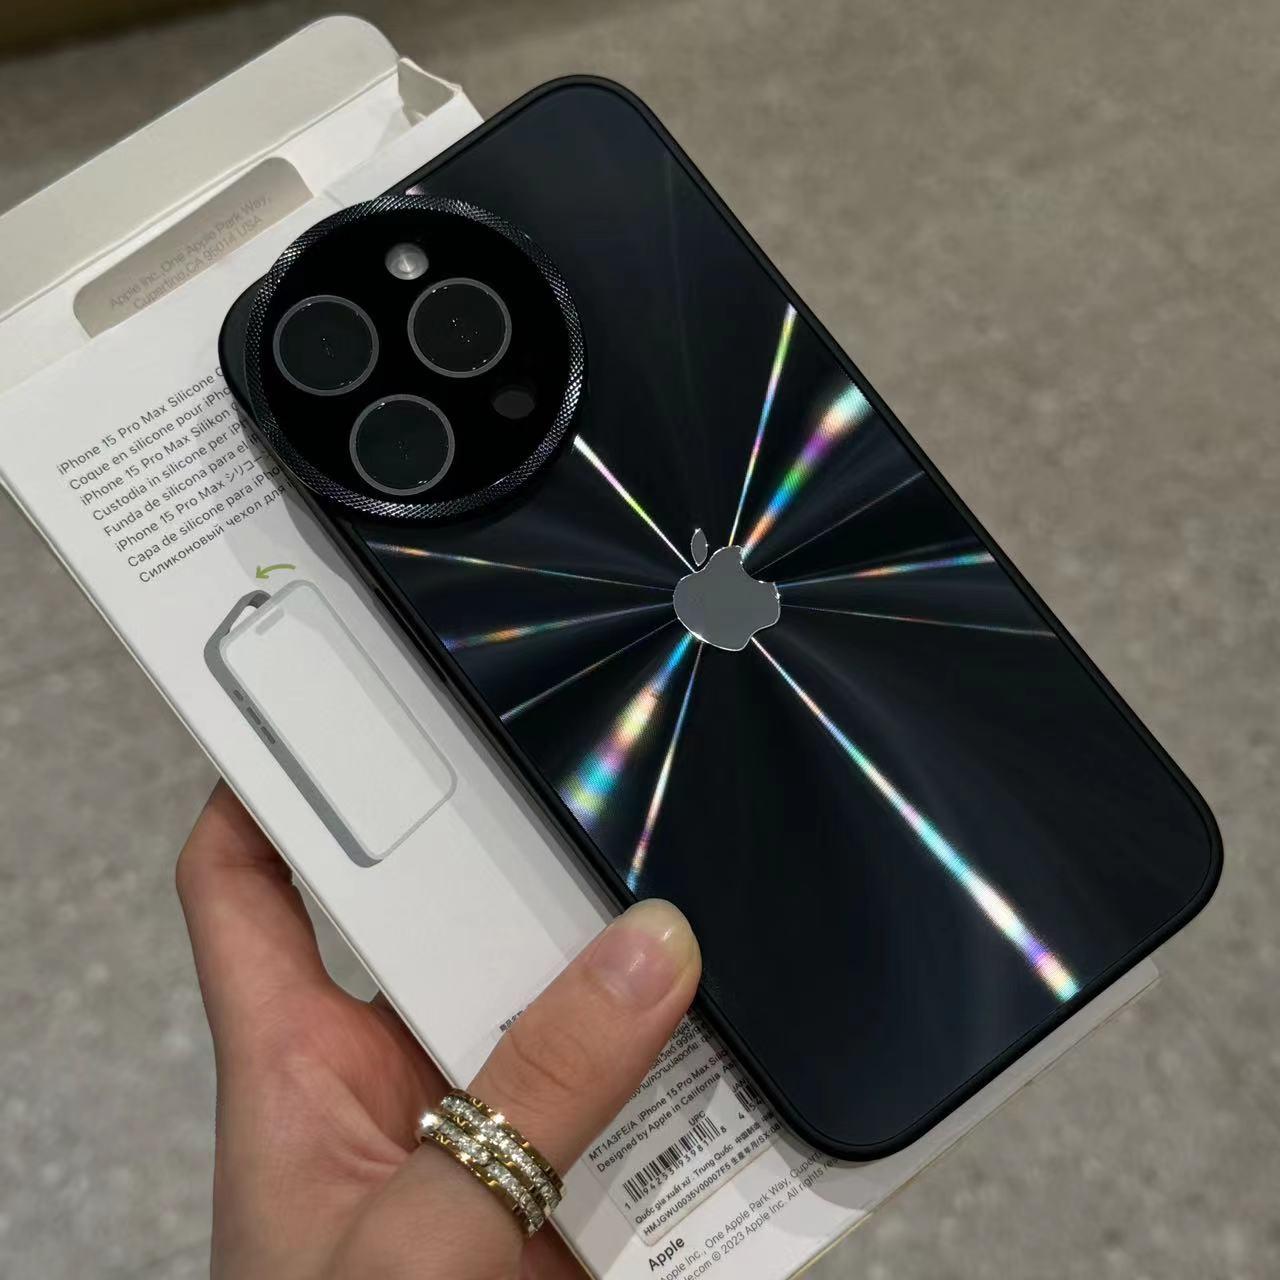 Diamantförmige, runde Spiegel-Handyhülle für die iPhone-Serie 